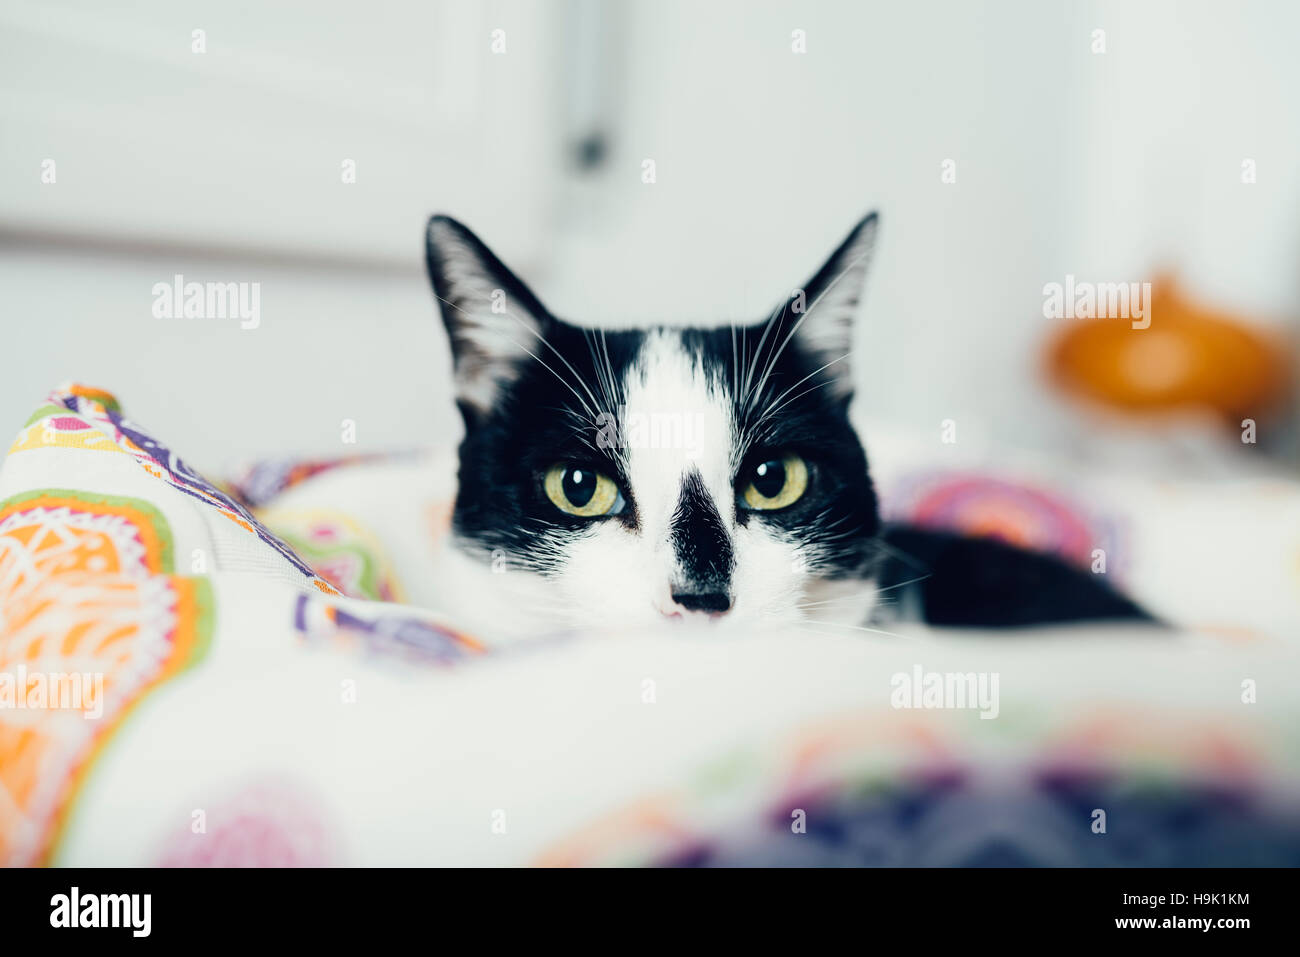 Portrait de chat noir et blanc lying on bed at home Banque D'Images